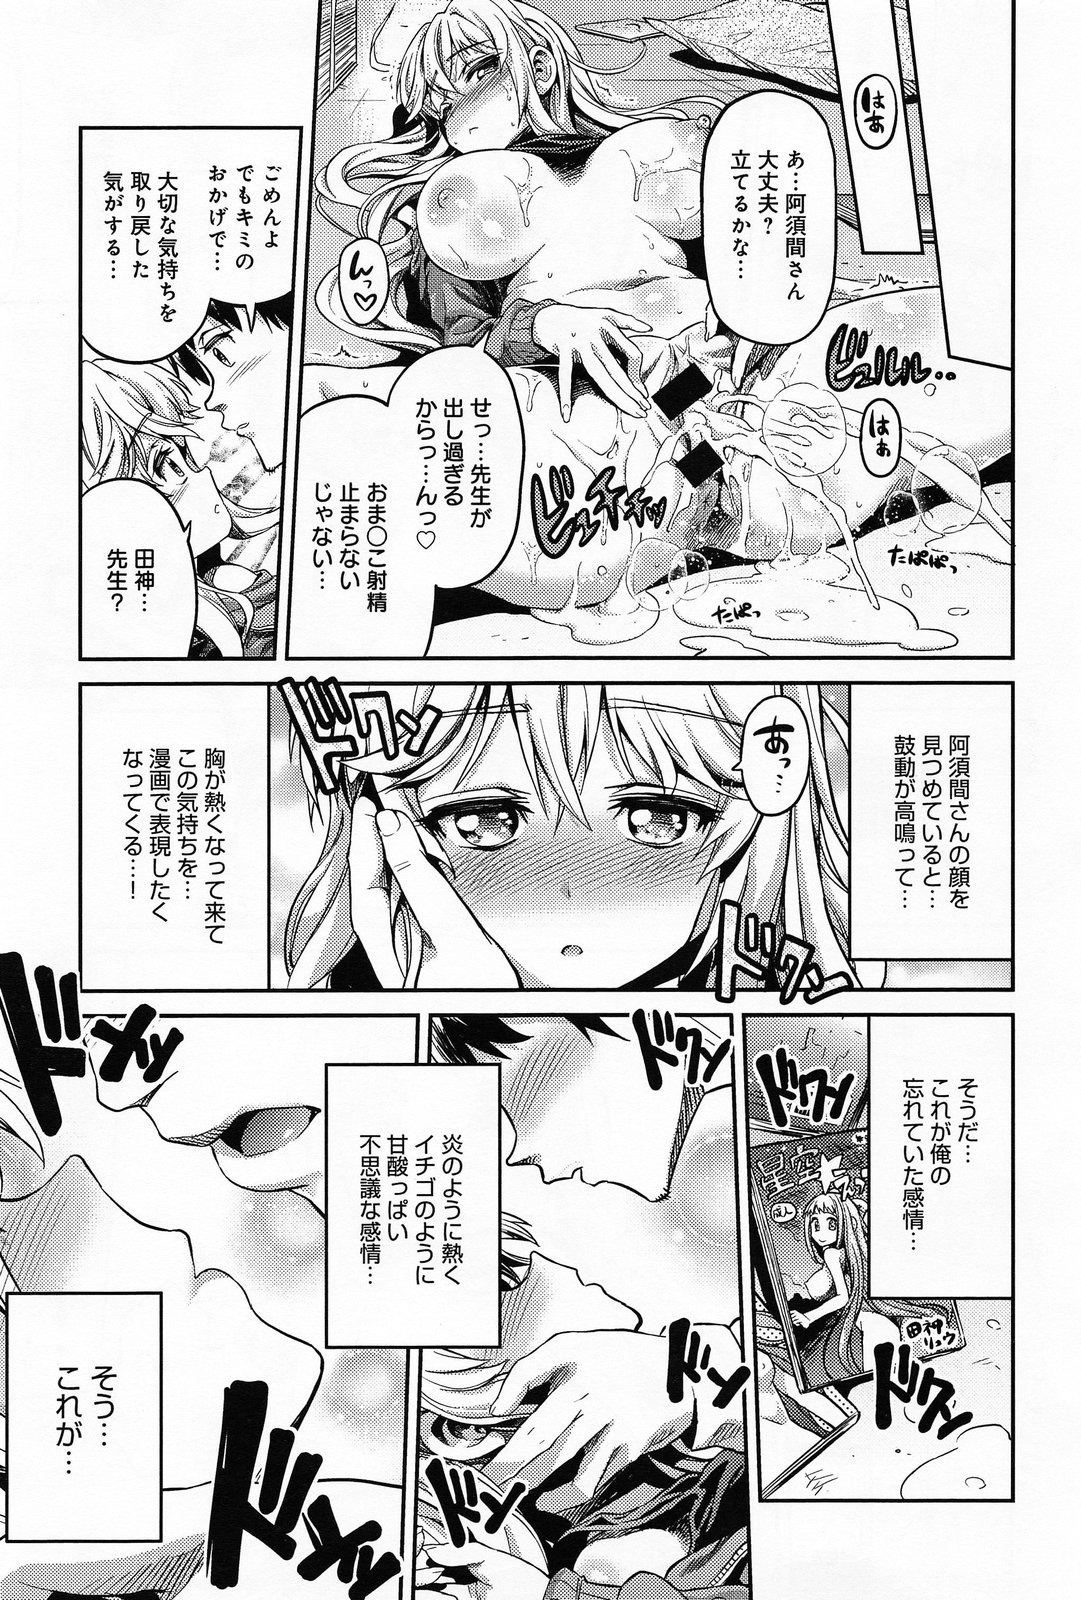 [Hinotsuki Neko] Man x Koi Ch.1-2 page 19 full